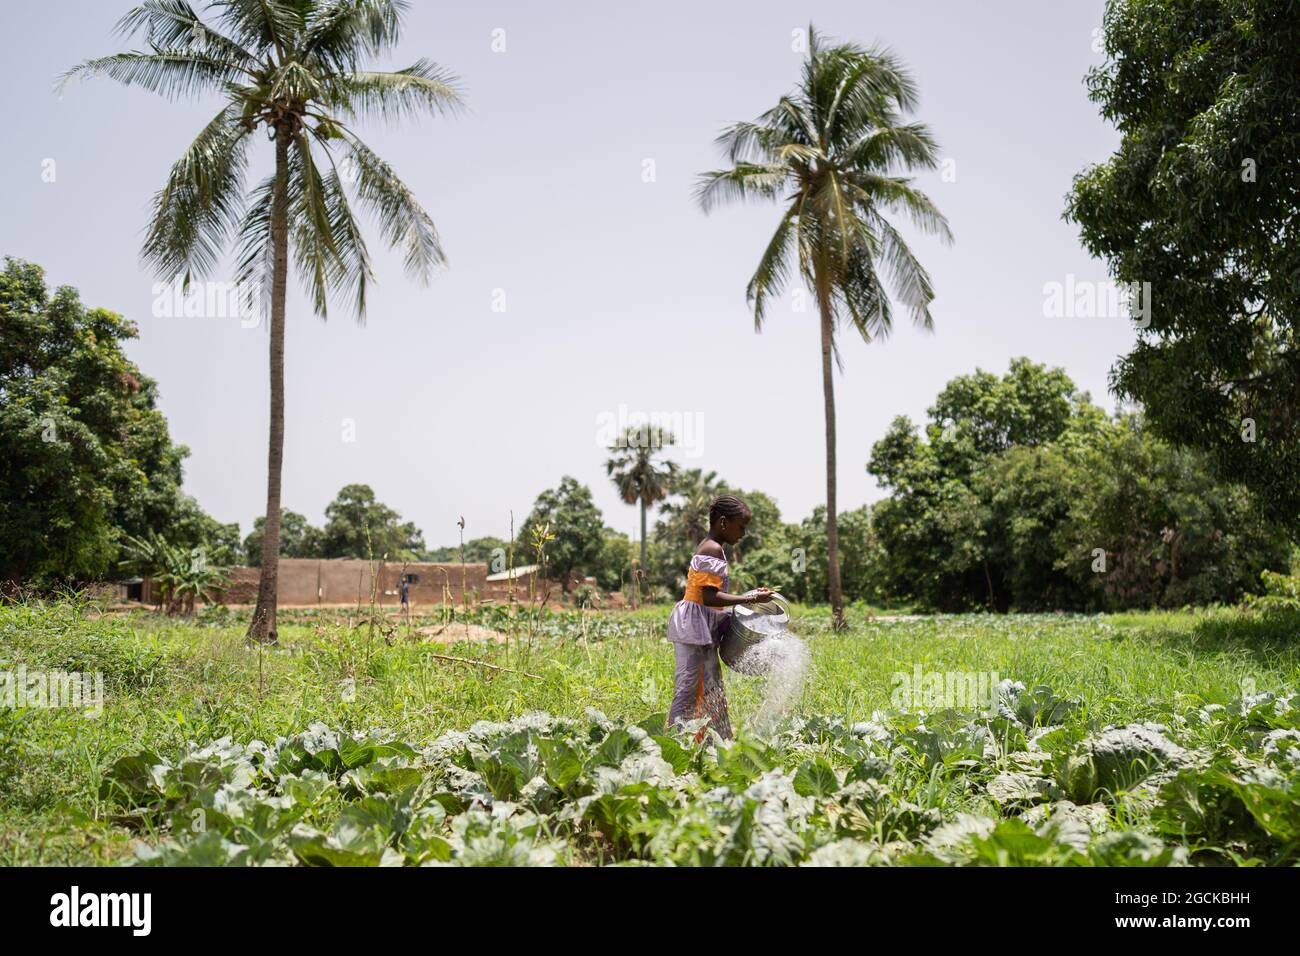 Une petite fille noire très occupée abreuver des plantes de chou dans une plantation africaine pittoresque entourée d'arbres et de palmiers Banque D'Images